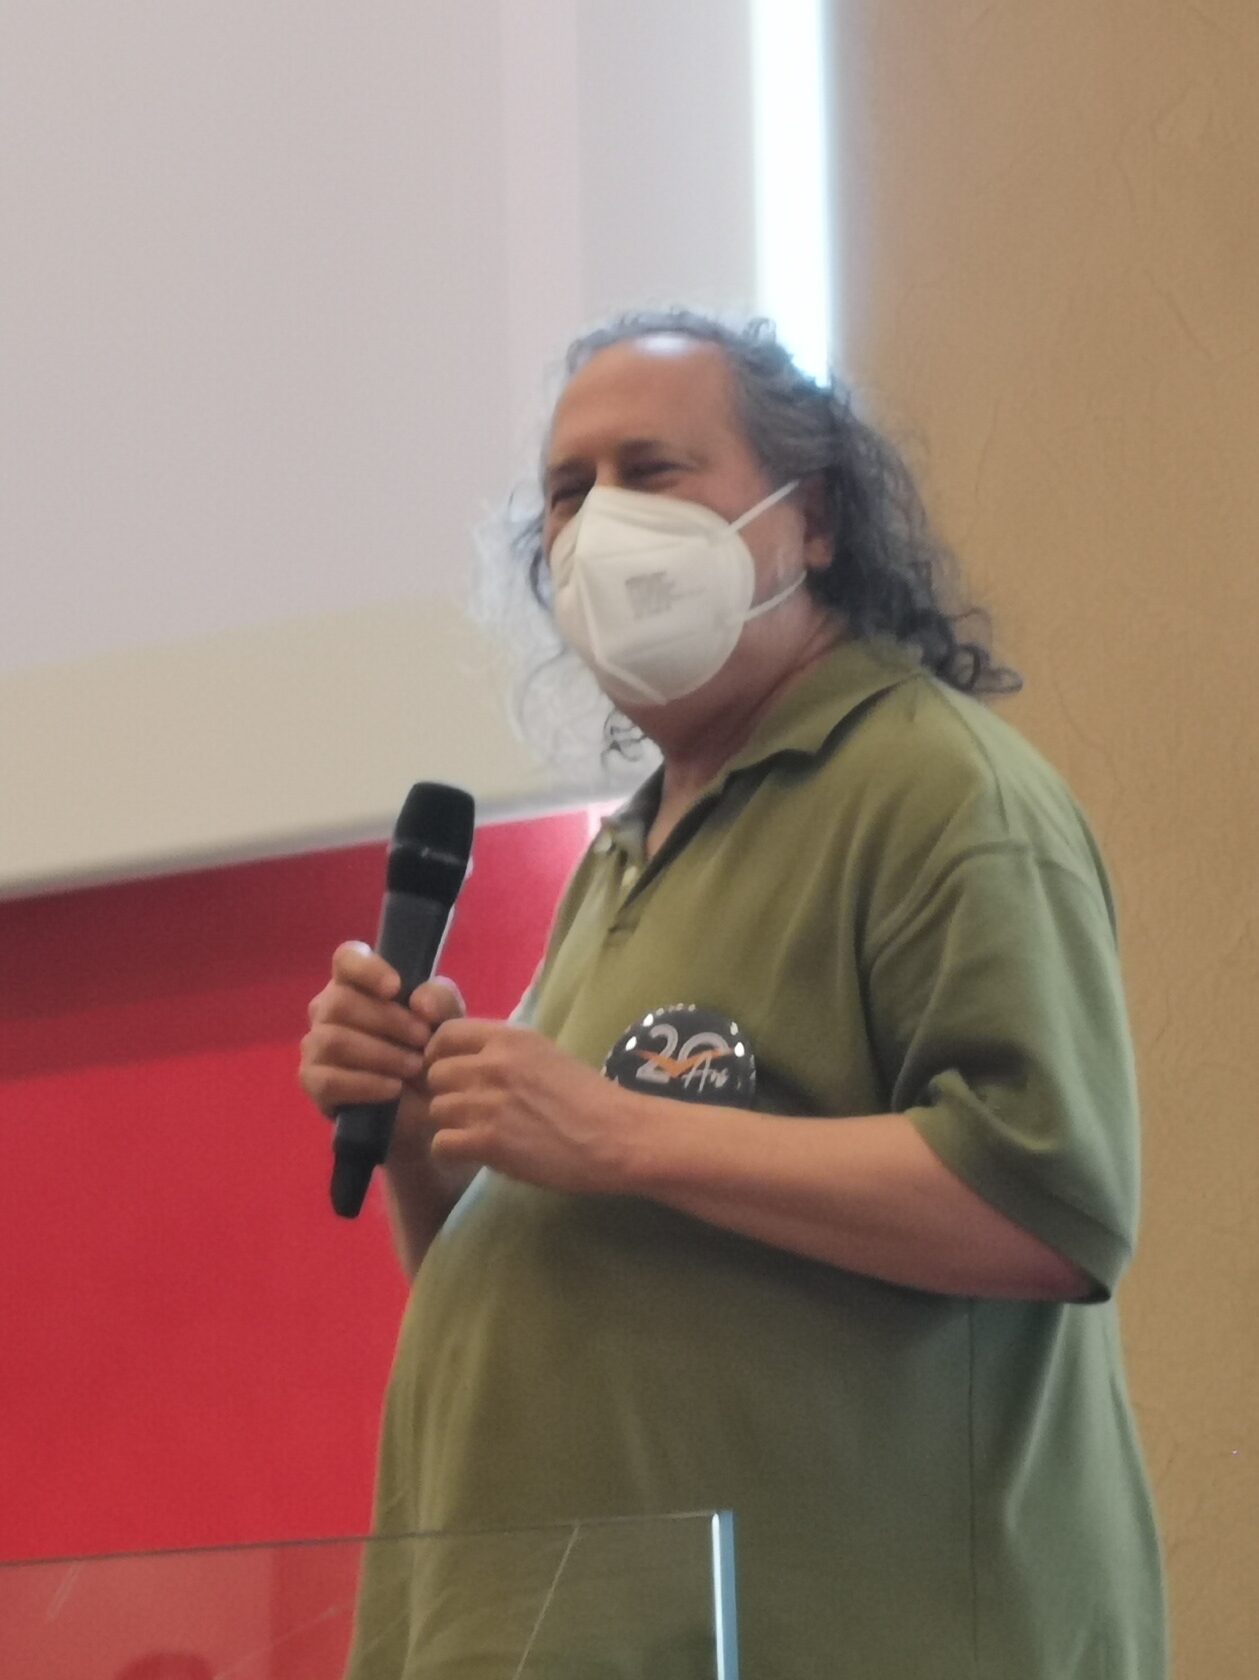 Richard M. Stallman est debout sur une estrade, il porte un micro HF à la main, un masque FFP2 devant le visage et un badge du congrès de l’adullact sur la poitrine